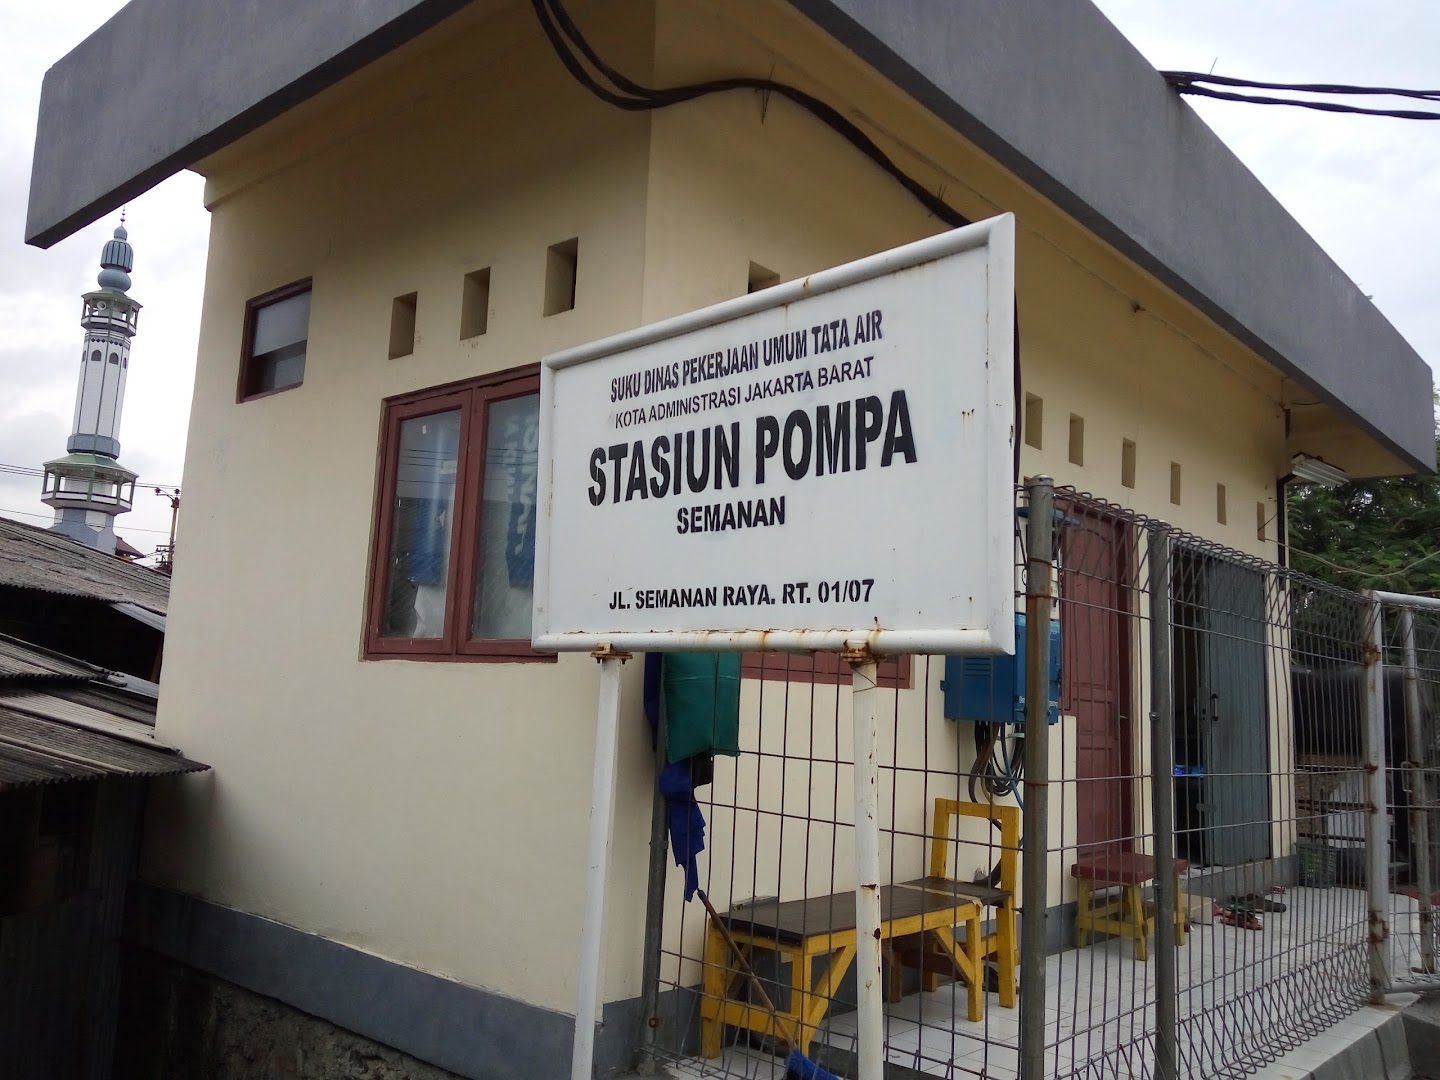 Stasiun Pompa Semanan Photo